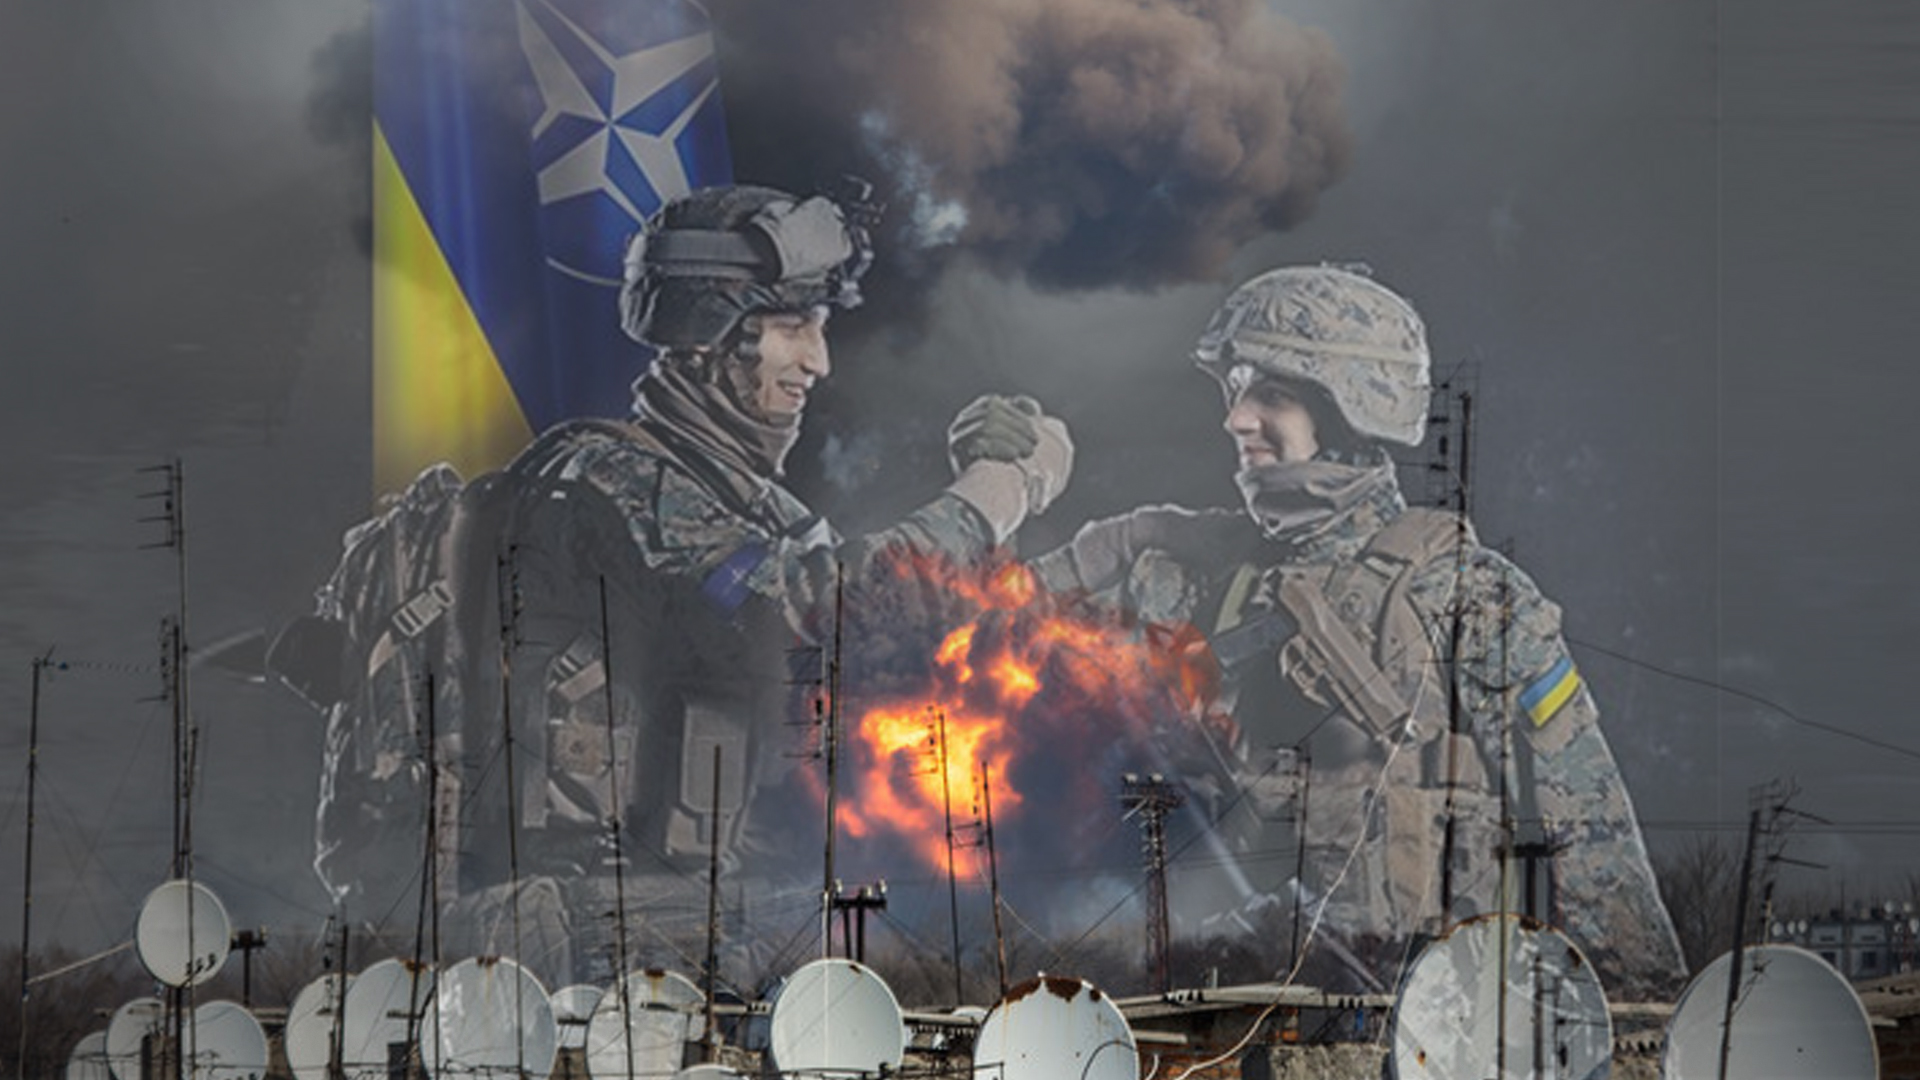 Пожар на складе в Балаклее как повод ввести войска НАТО